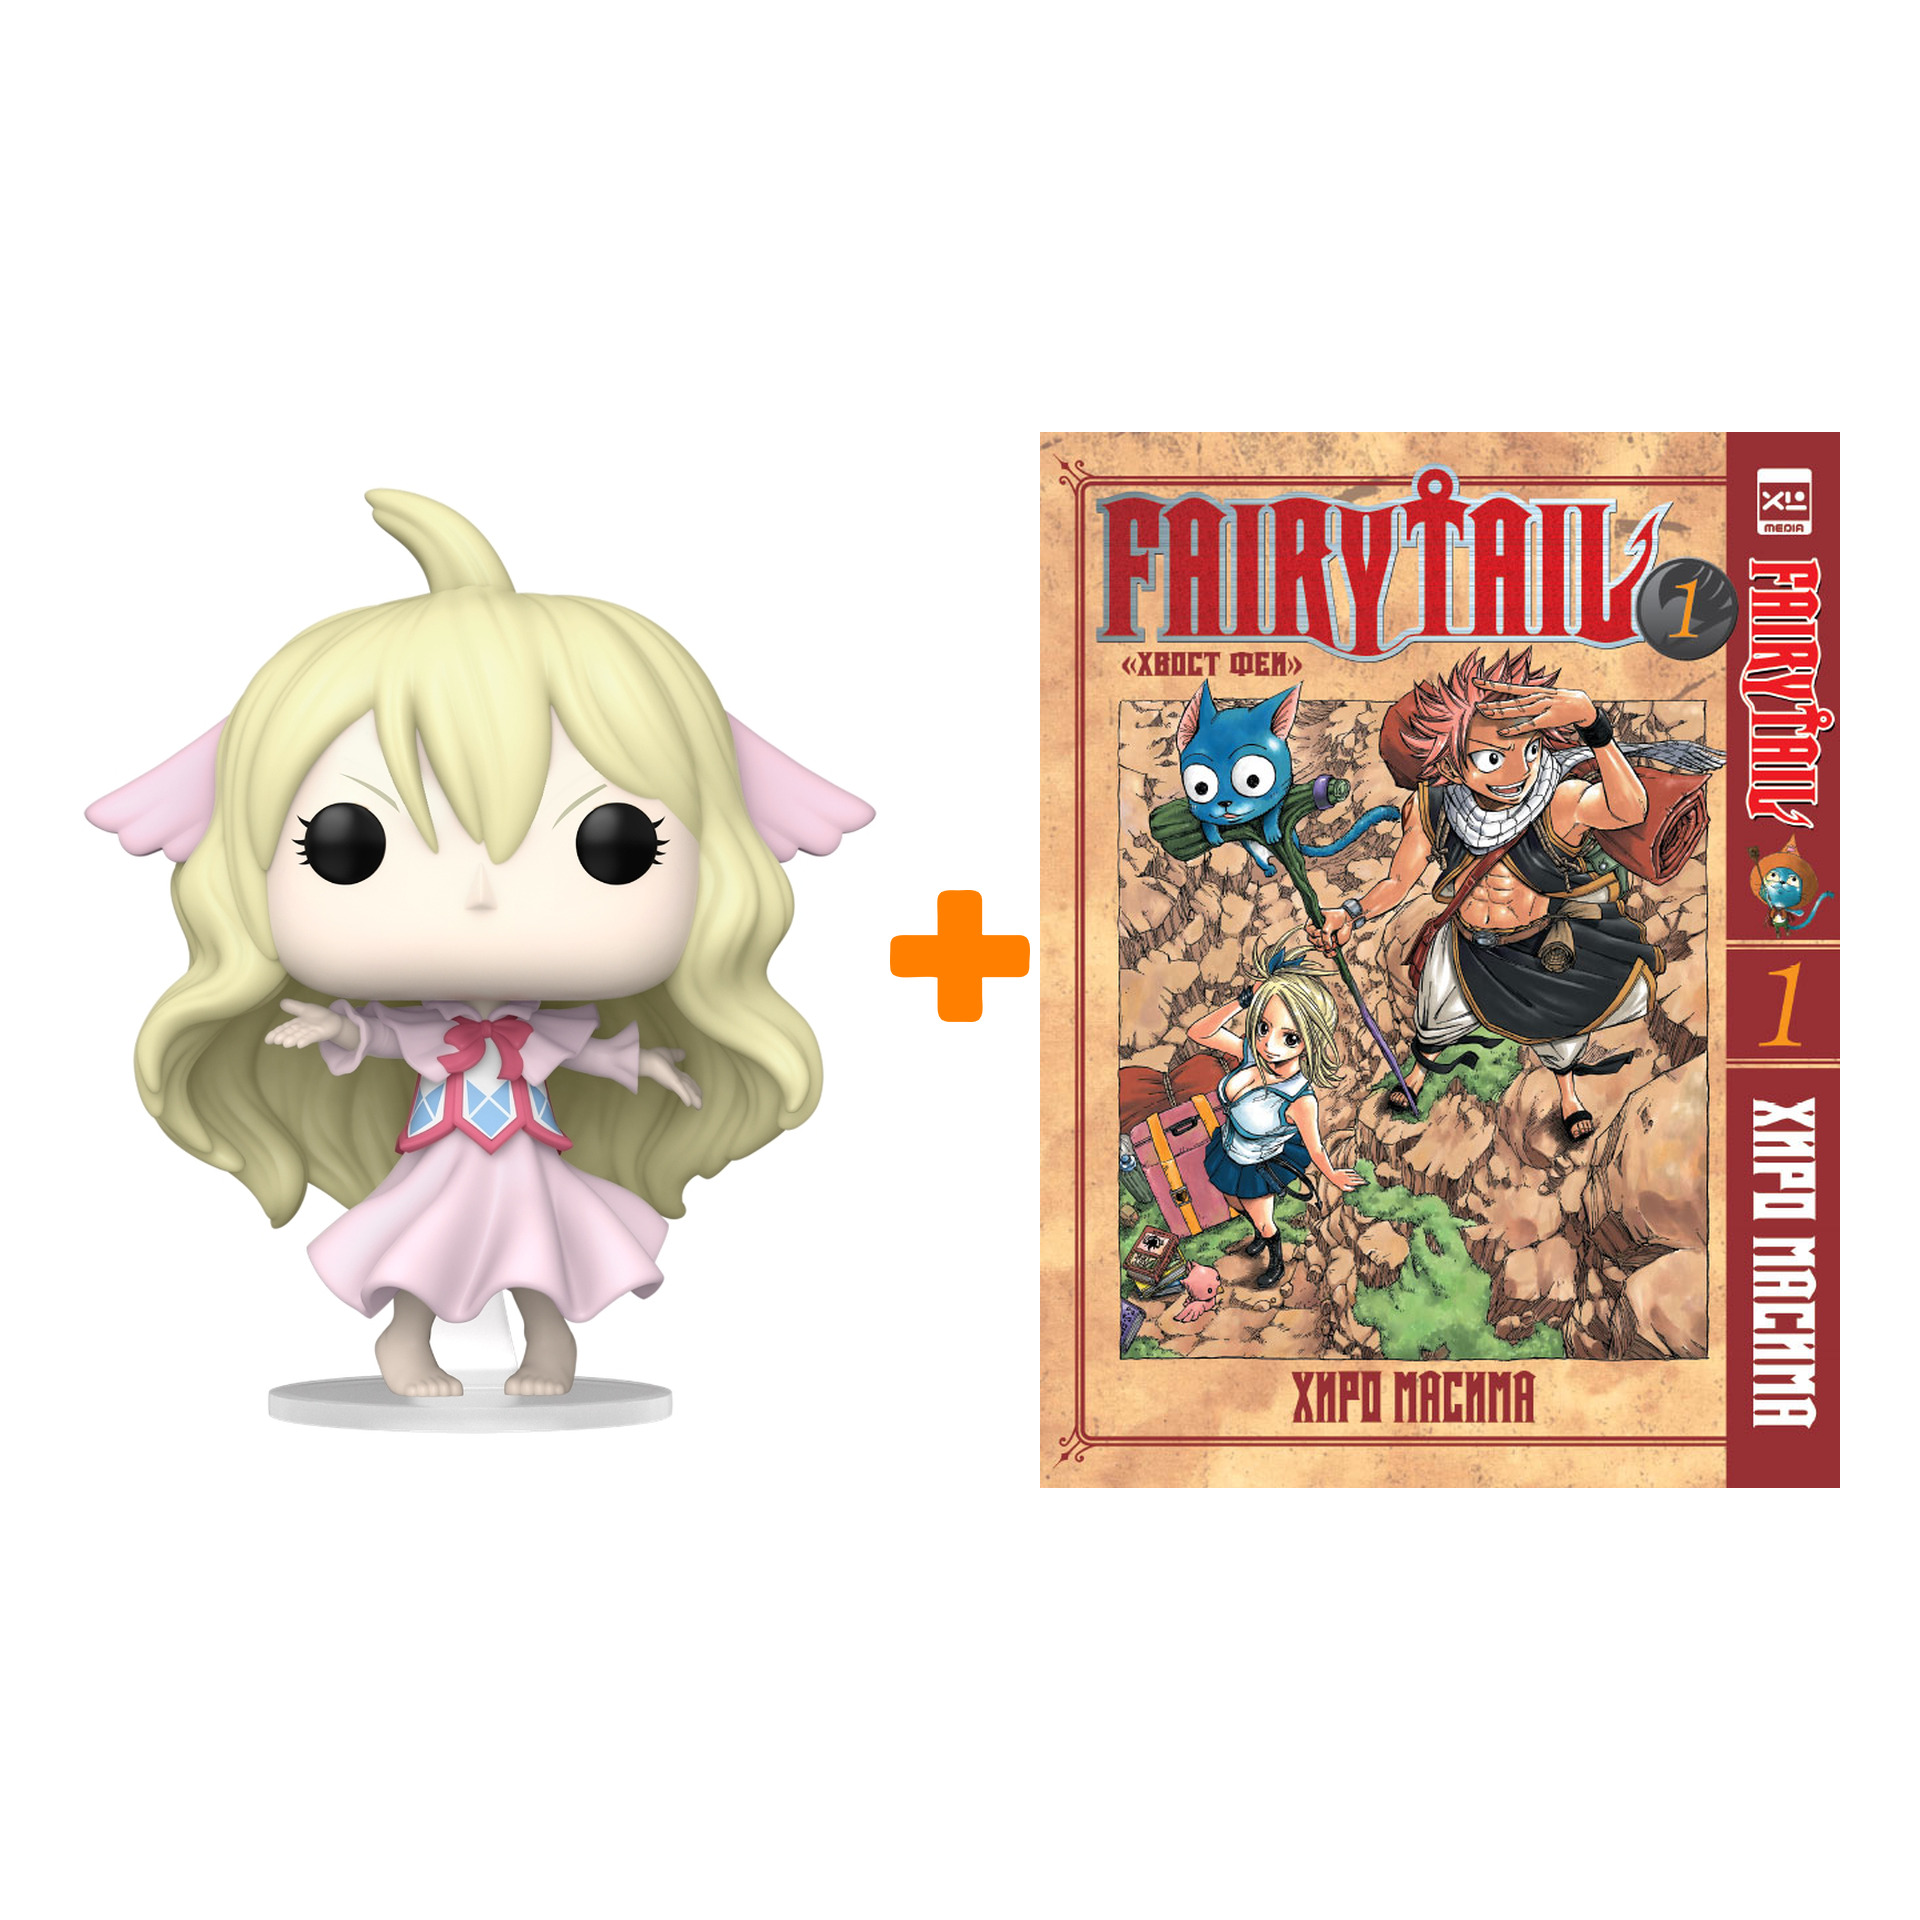 Набор Fairy Tail (фигурка Fairy Tail Mavis Vermillion + манга Хвост феи 1)